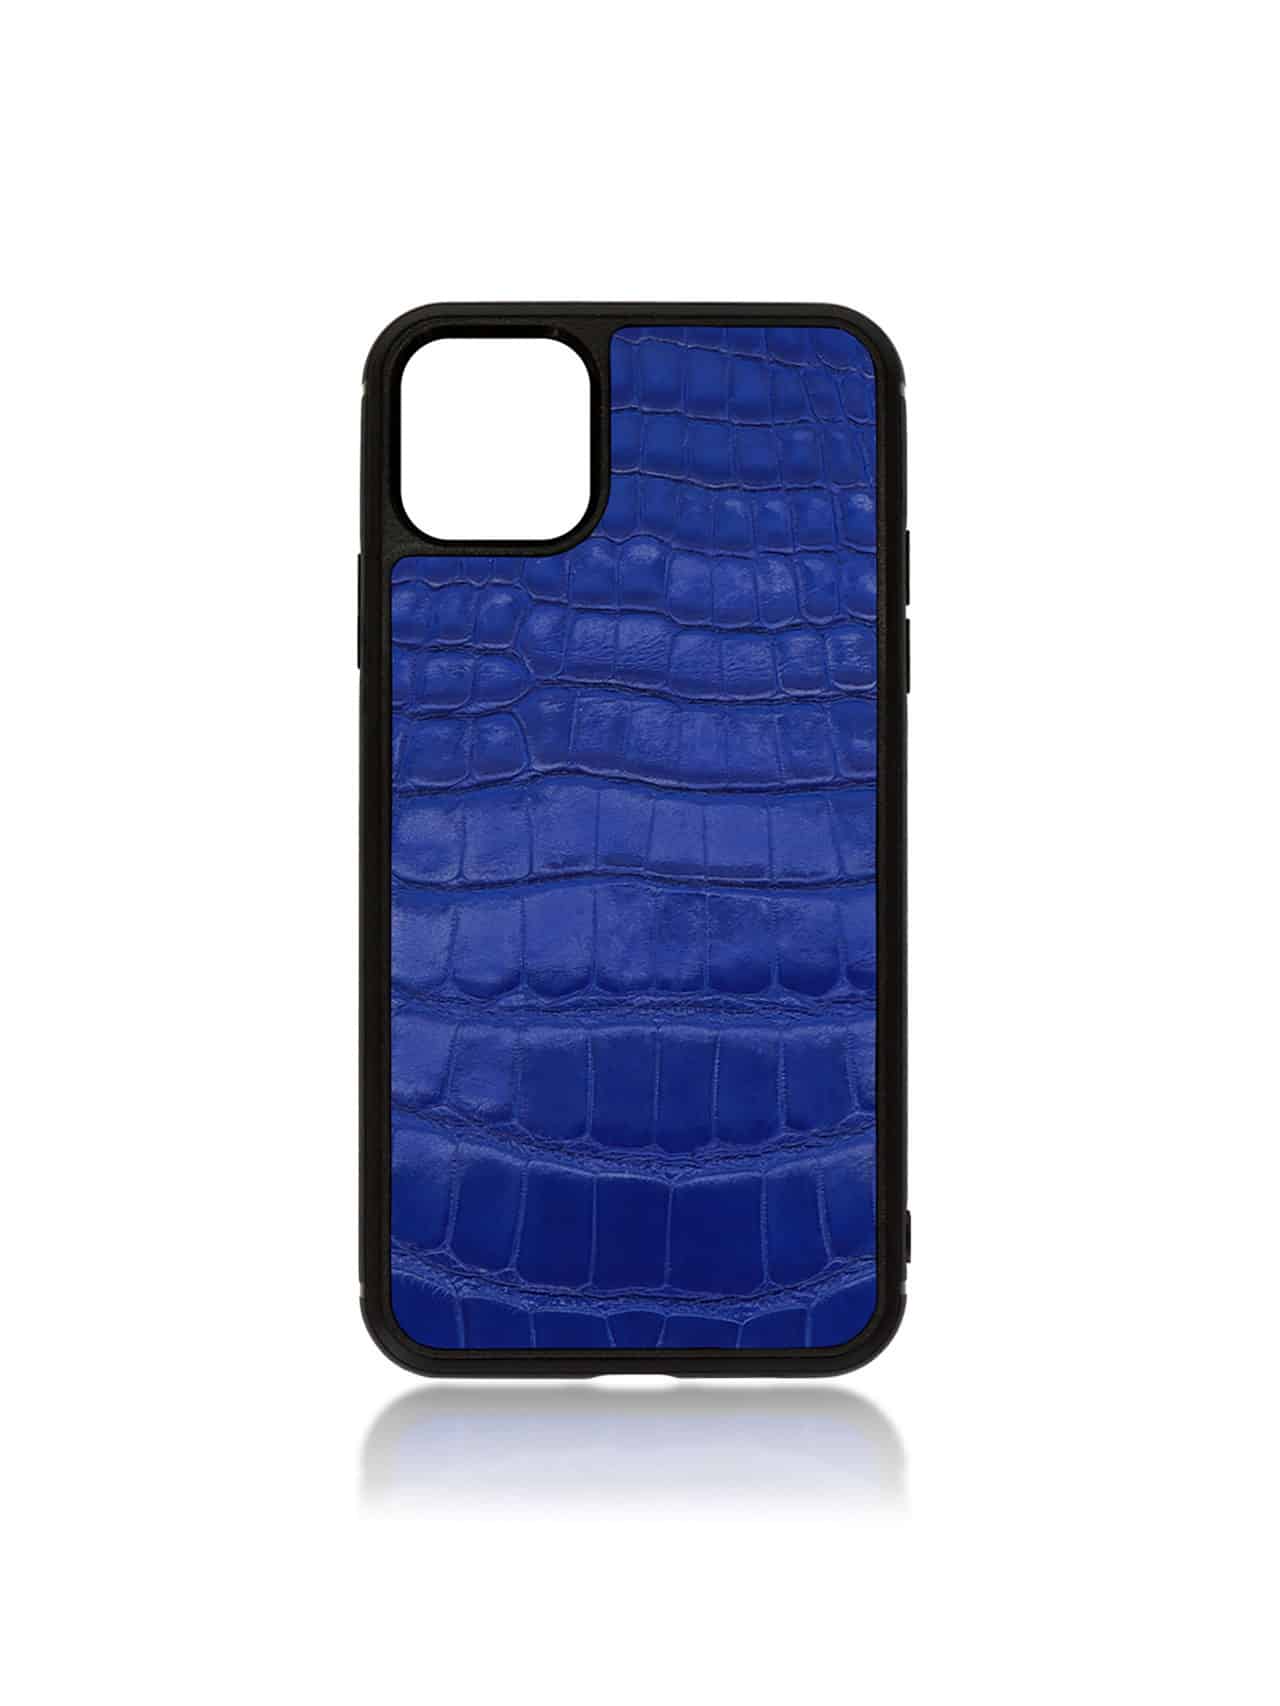 iphone case apple jean rousseau crocodile blue